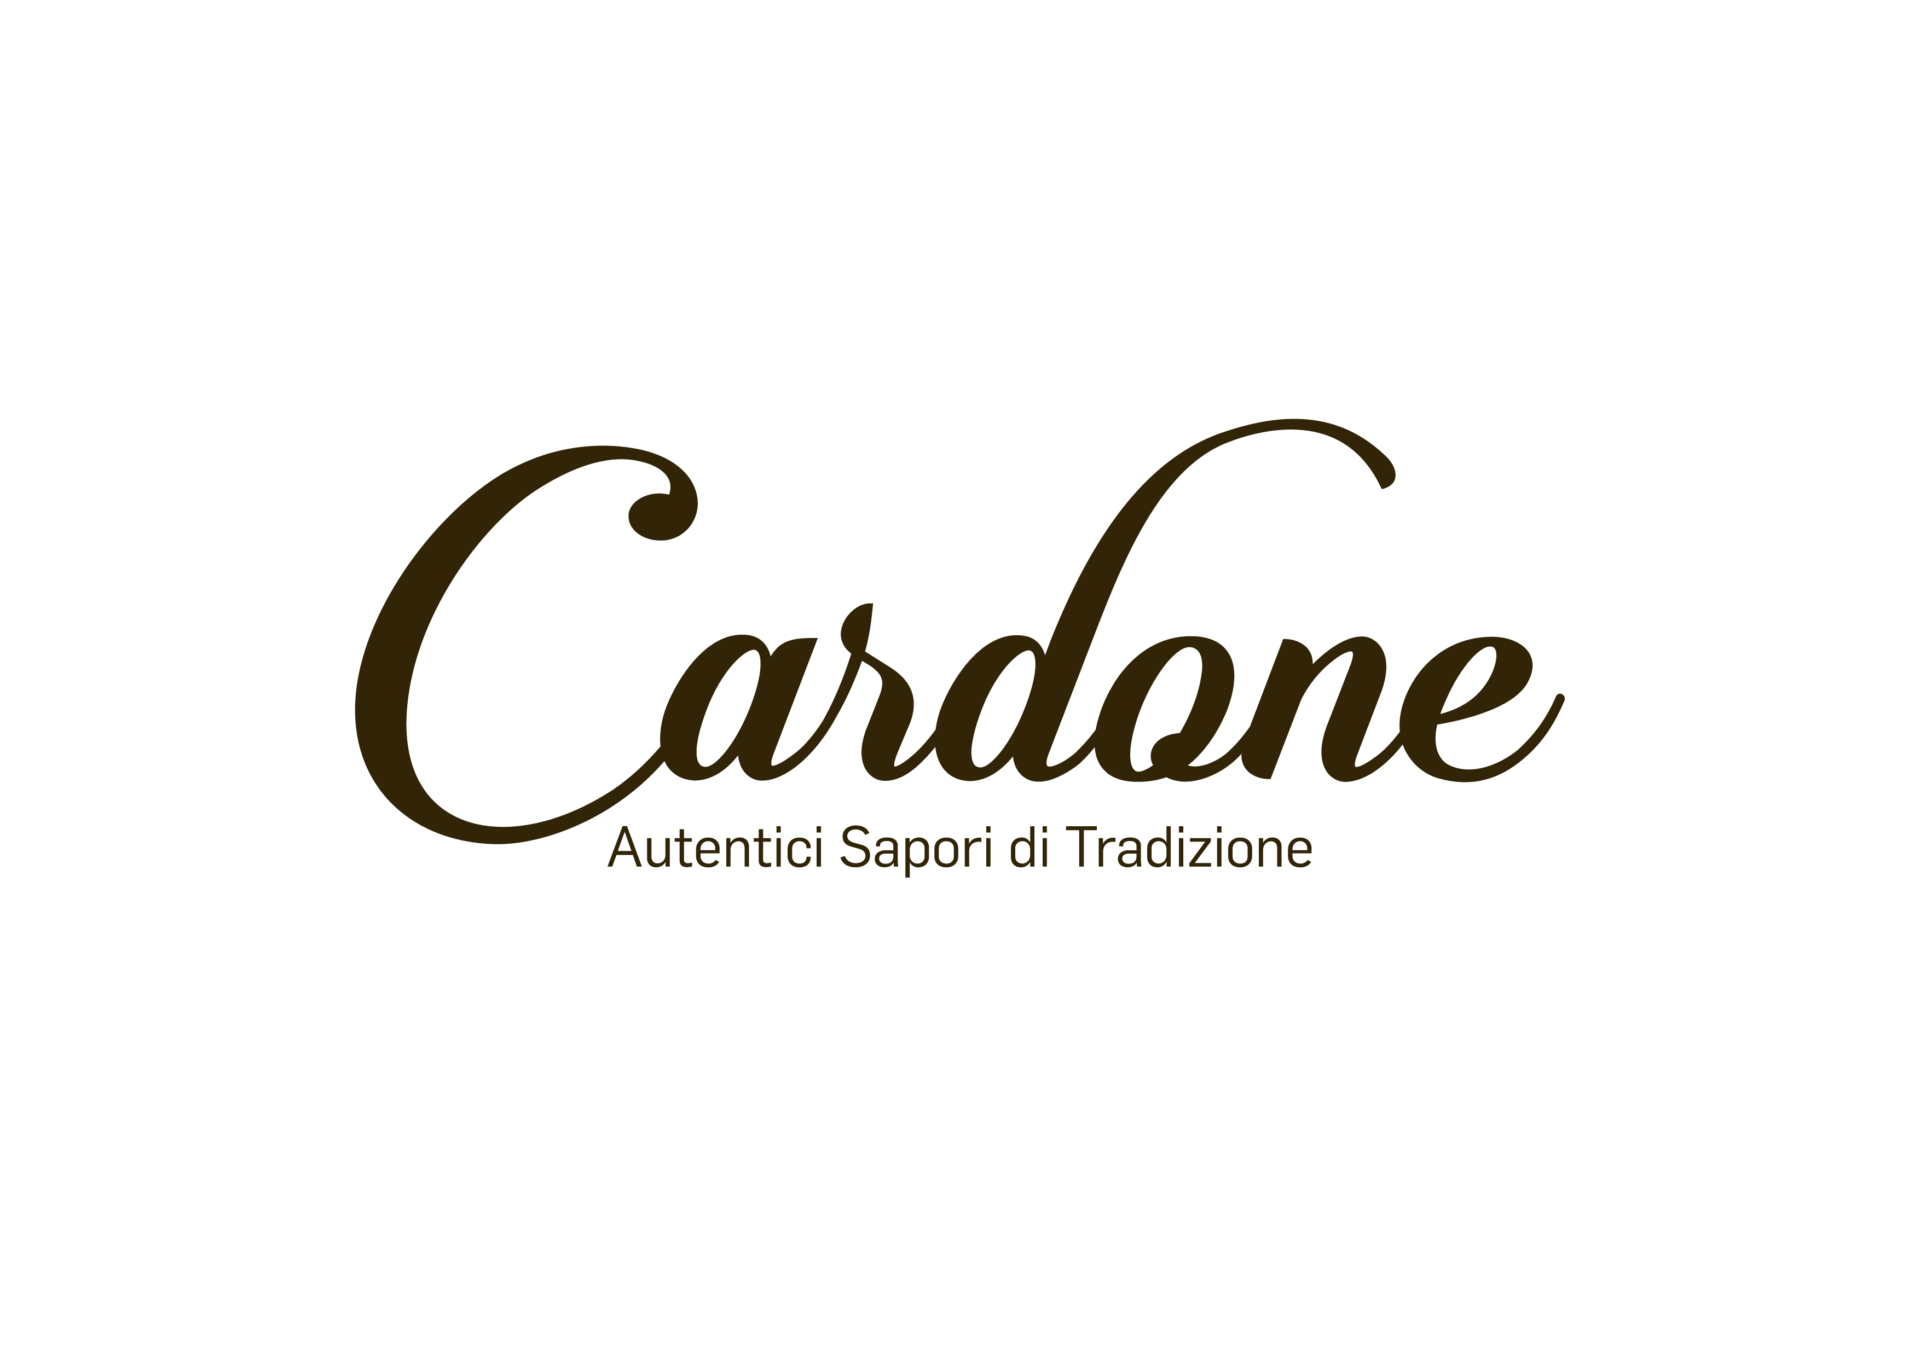 Pastificio Cardone